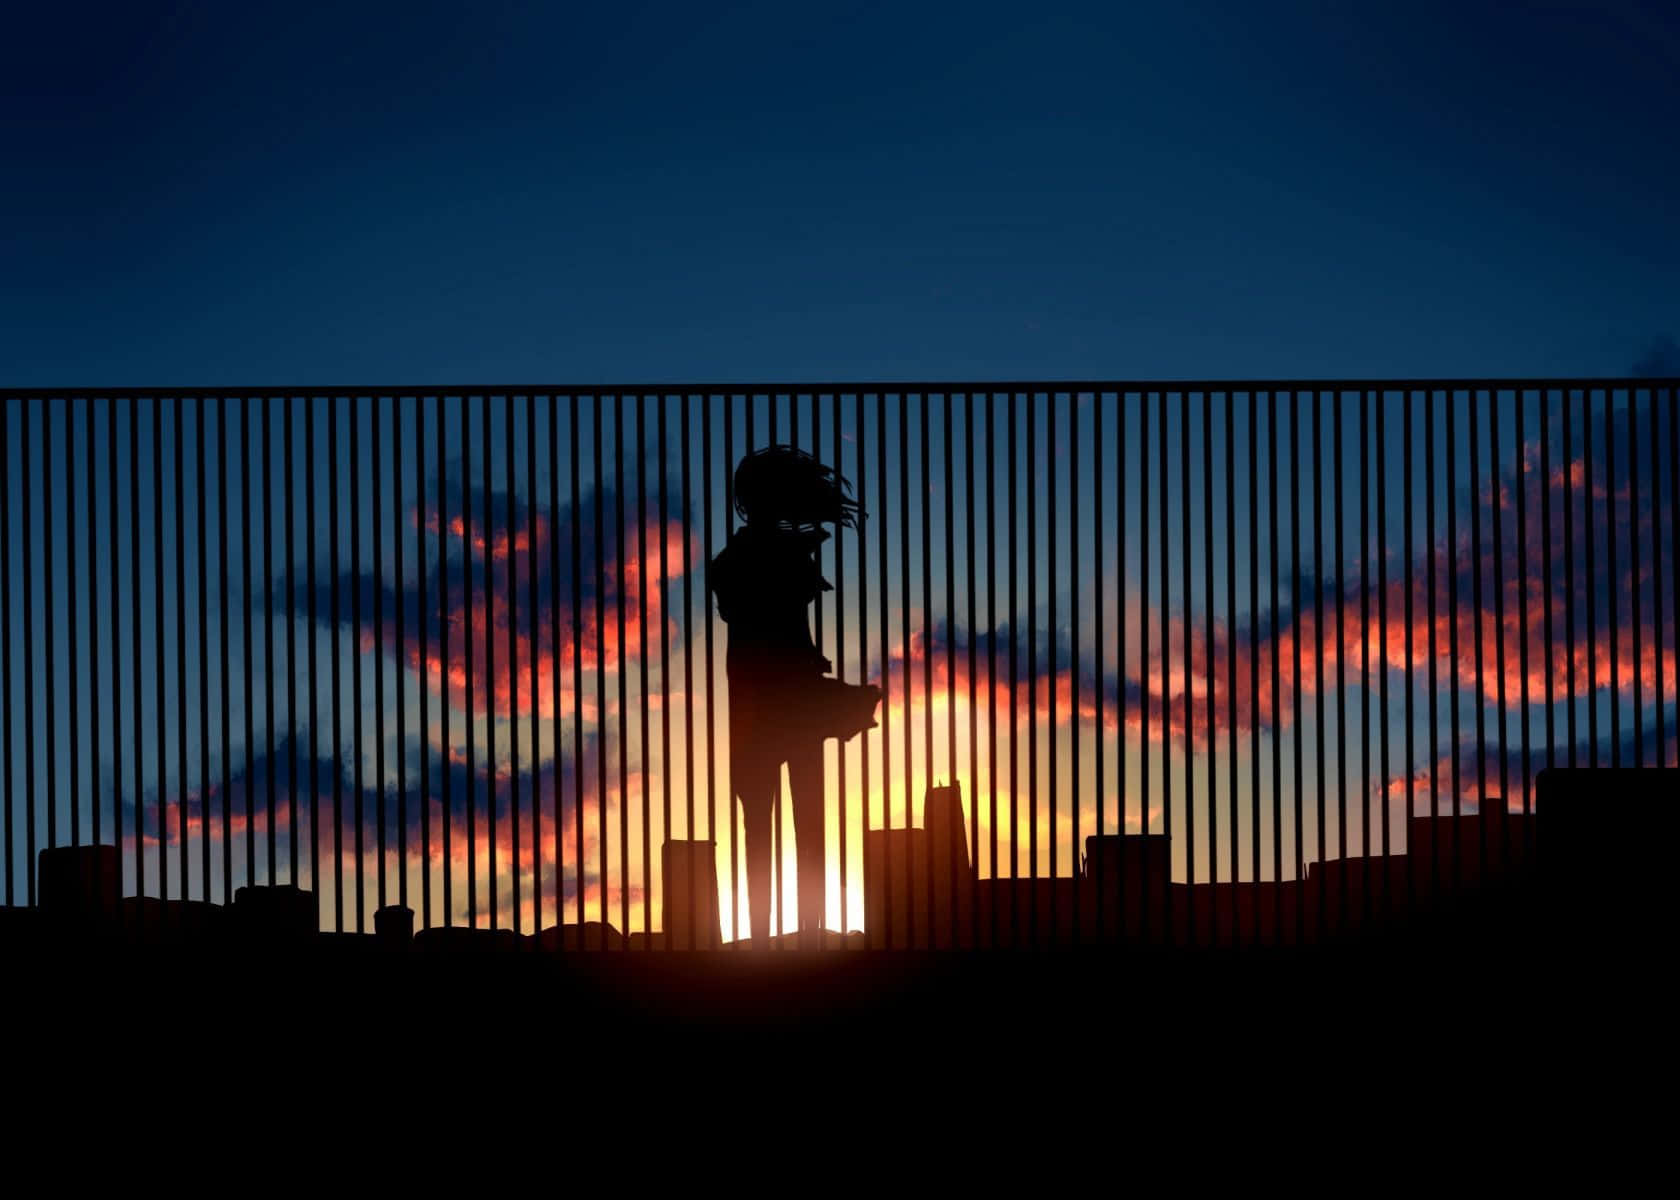 Effective Girl In Sunset [wallpaper] Wallpaper